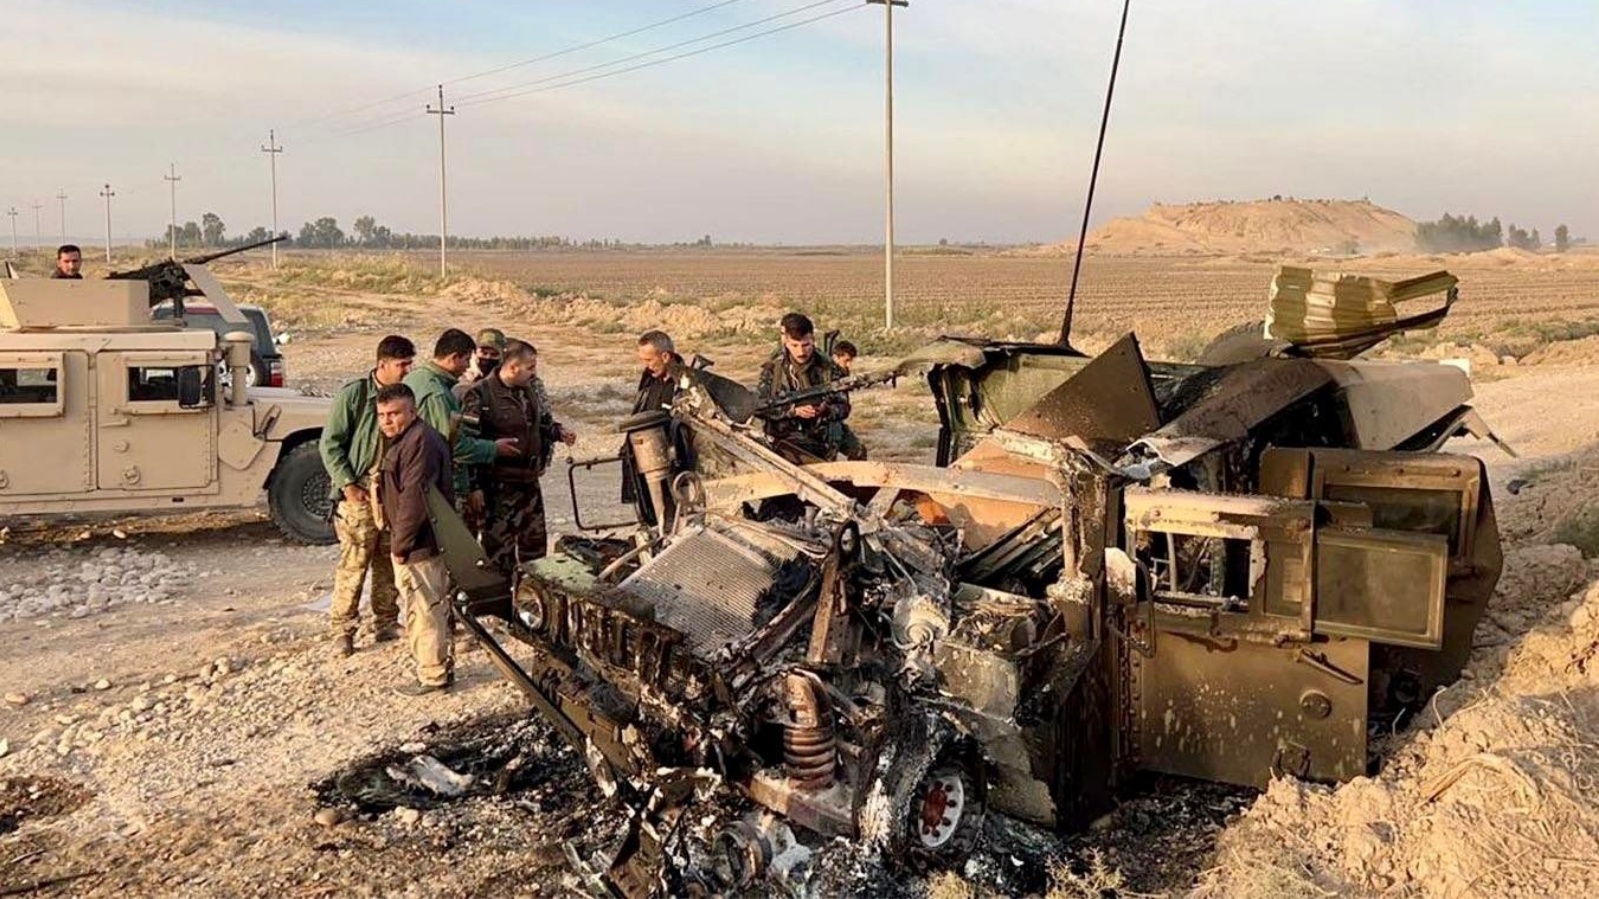 موقع استهداف آلية عسكرية في إقليم كردستان (تويتر)